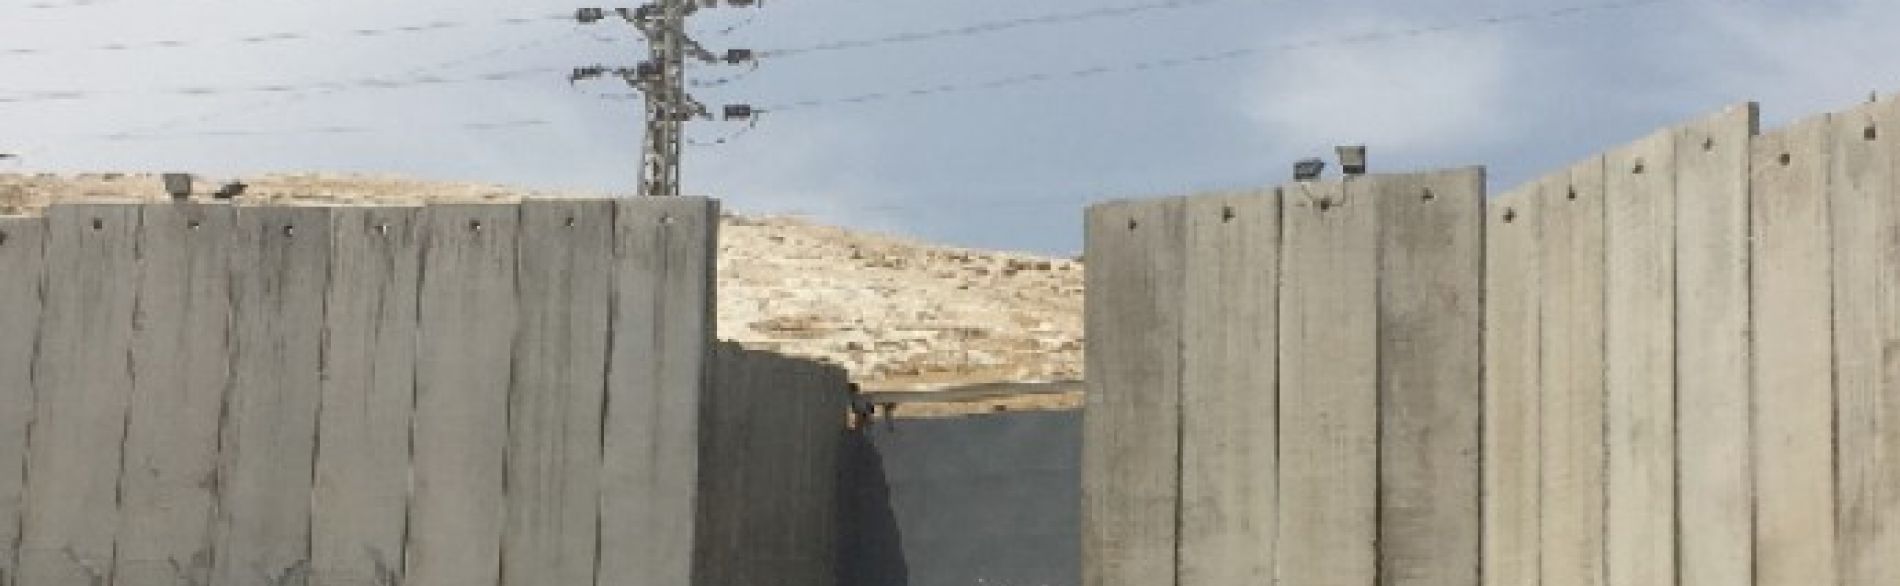 הכביש הראשי המחבר את הכפר א־זעיים עם ירושלים המזרחית, מאי 2016 / © צילום: משרד האו״ם לתיאום עניינים הומניטריים